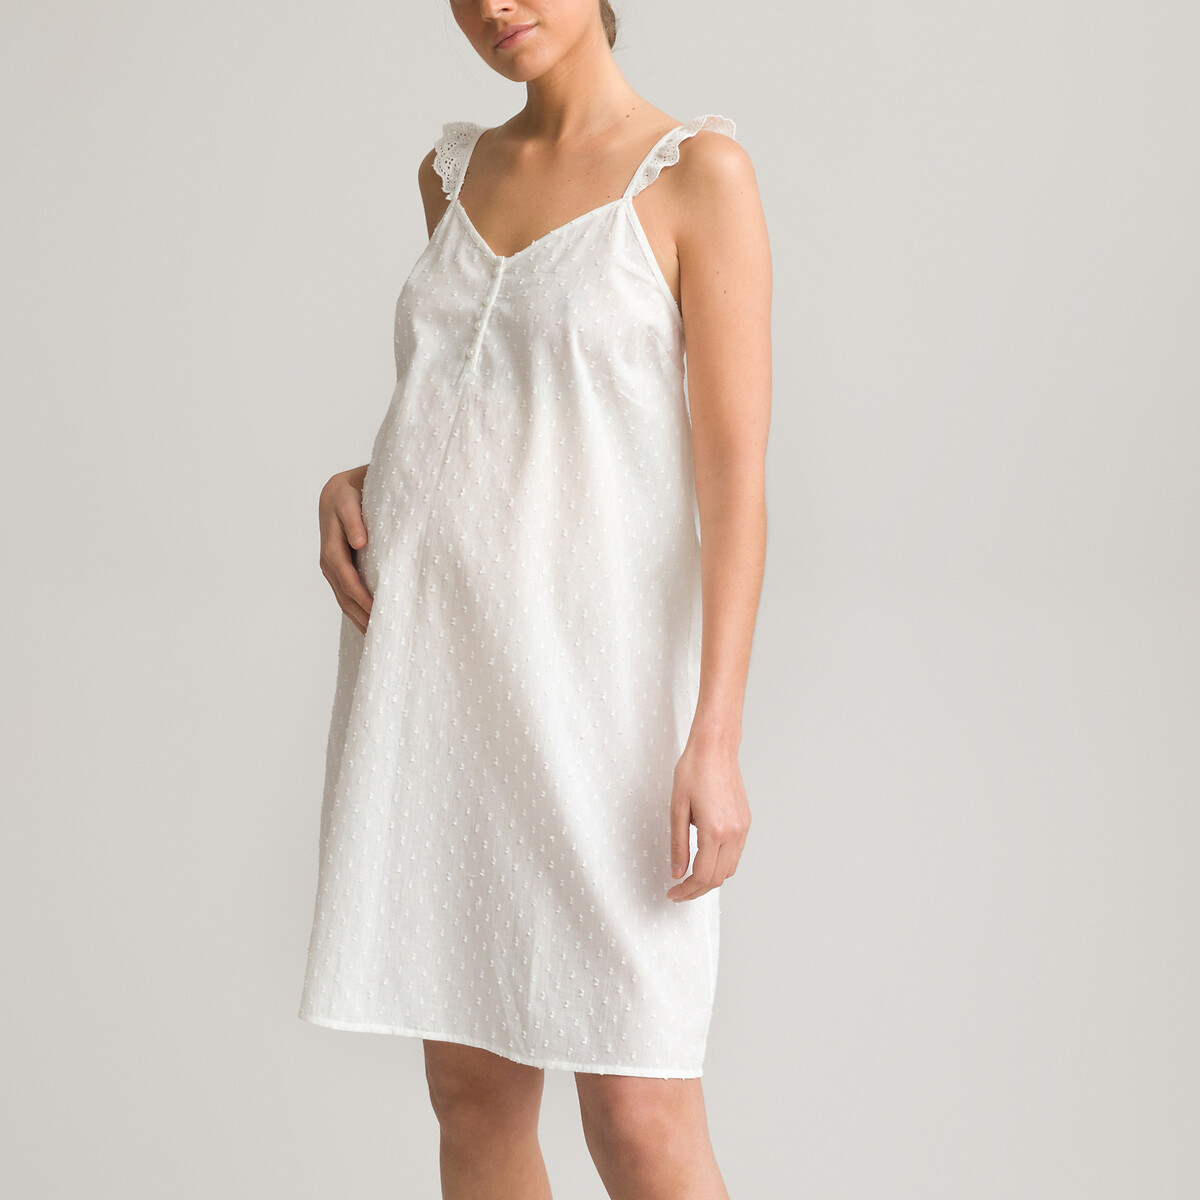 Рубашка LA REDOUTE COLLECTIONS Ночная для периода беременности из хлопка с вышивкой гладью 34 (FR) - 40 (RUS) белый, размер 34 (FR) - 40 (RUS)